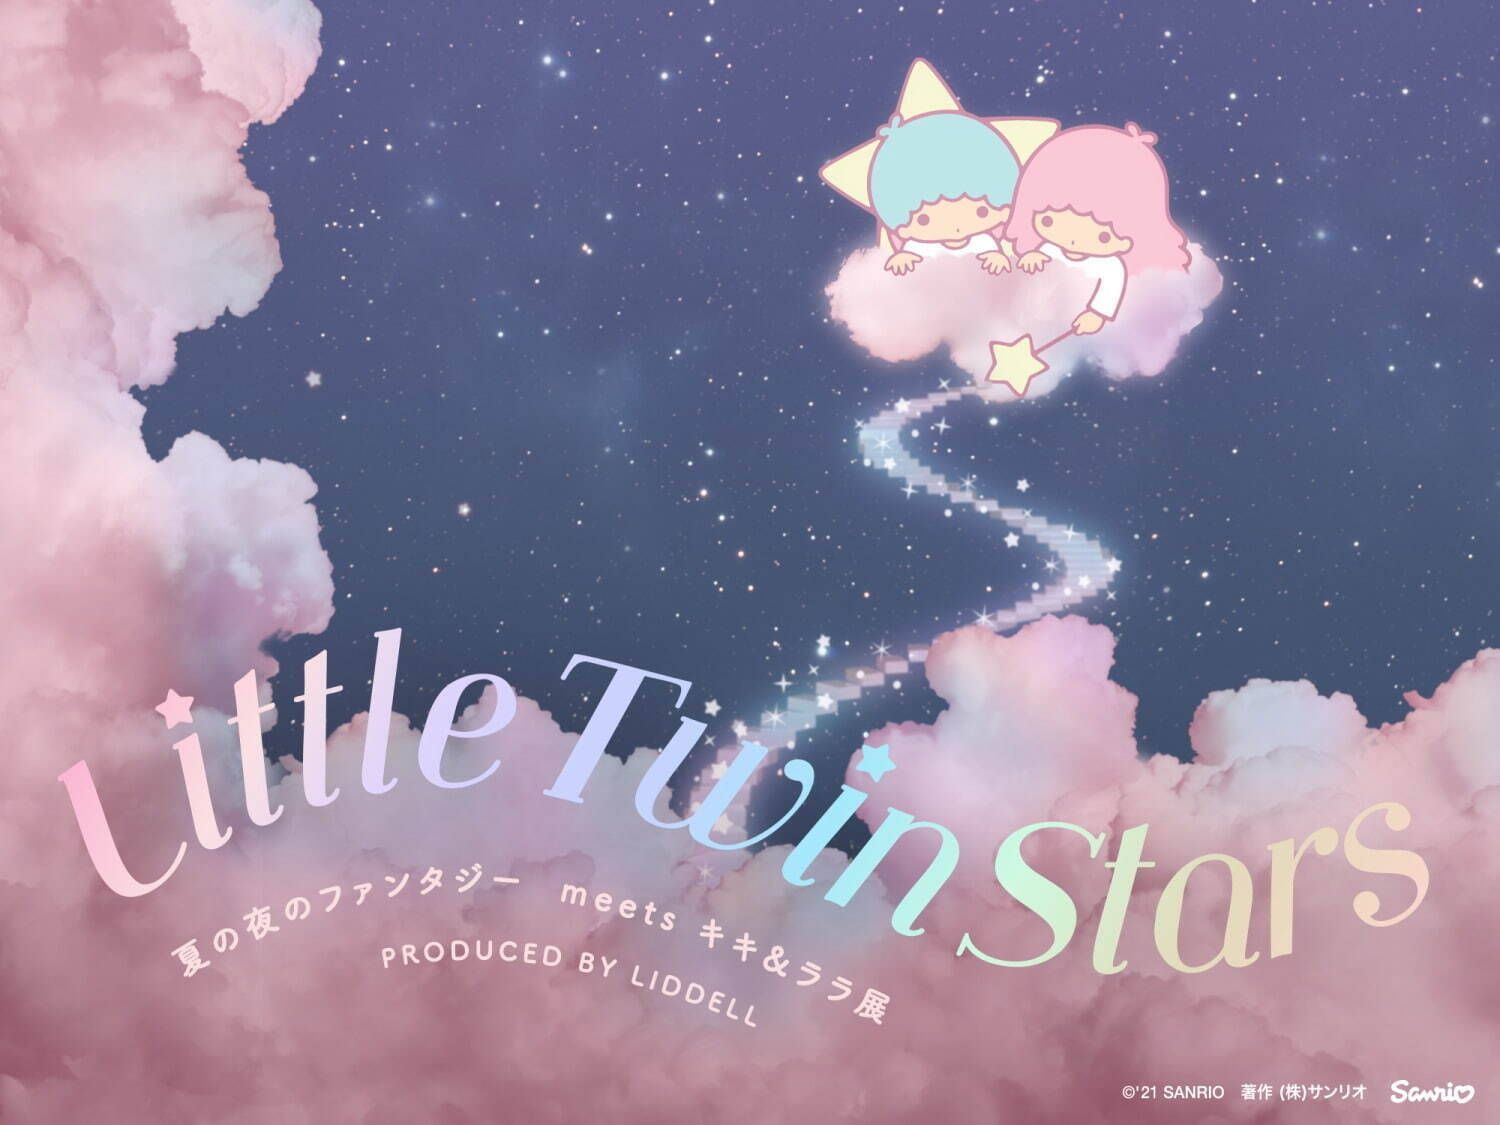 東京タワー Littletwinstars 夏の夜のファンタジー 開催 21年7月13日 エキサイトニュース